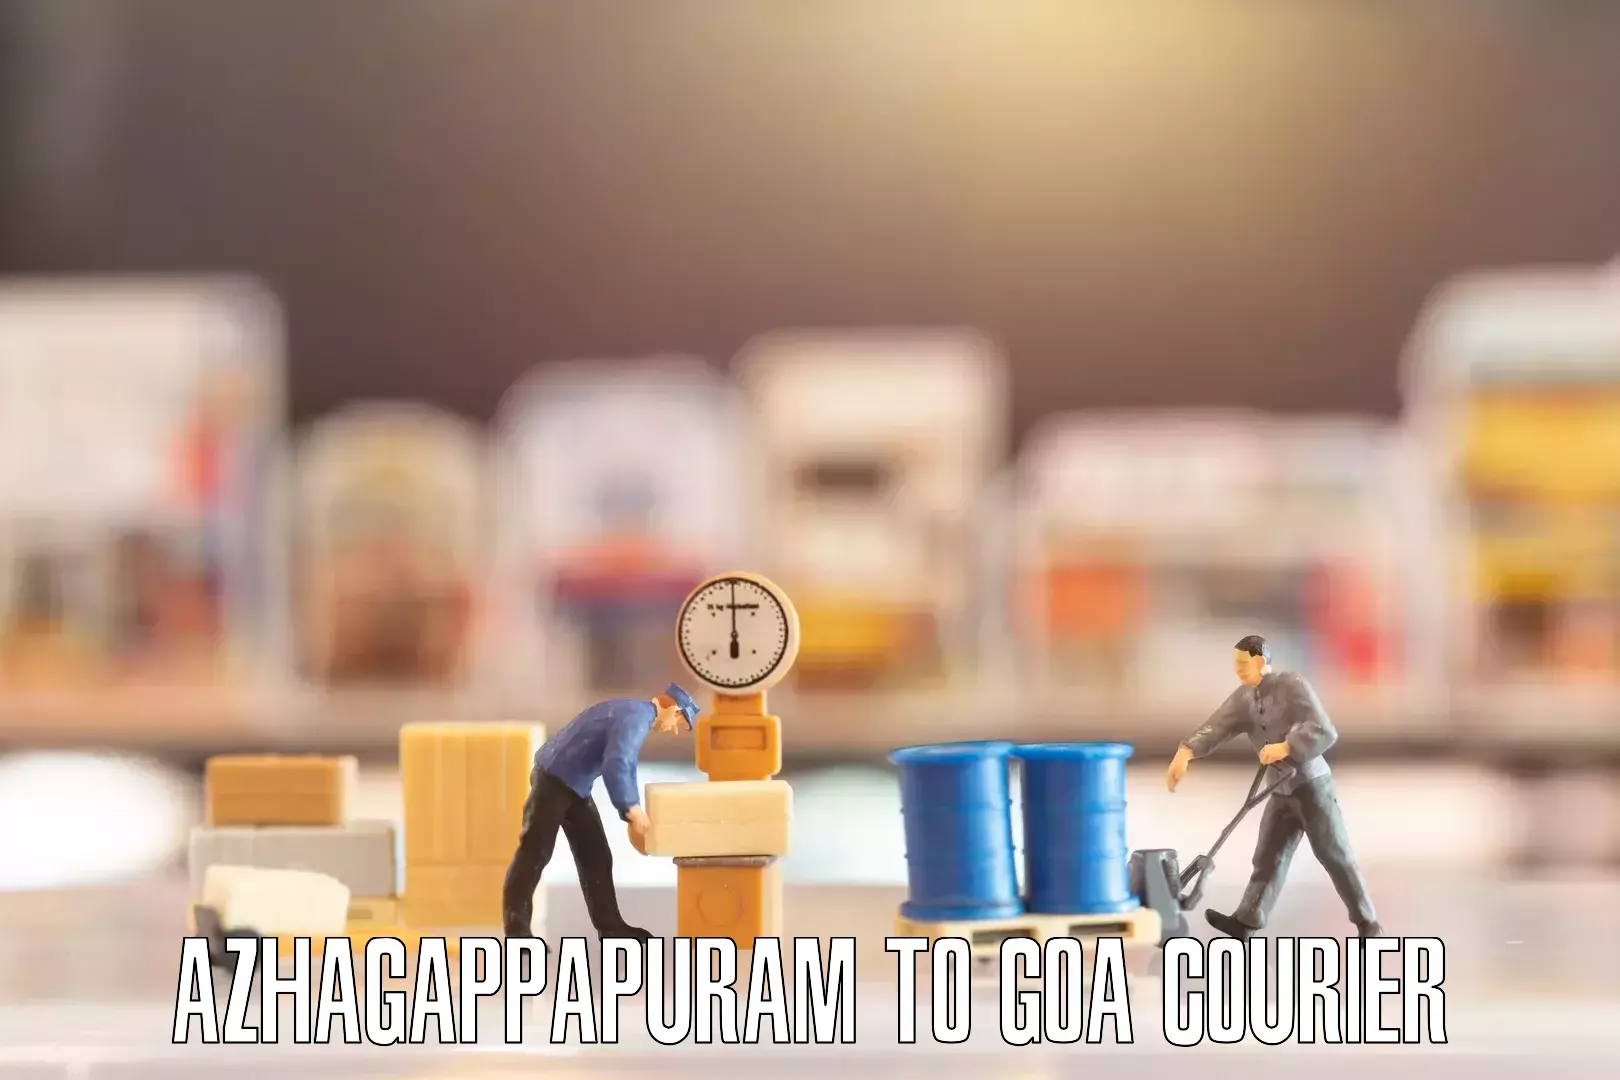 Furniture transport professionals Azhagappapuram to Canacona